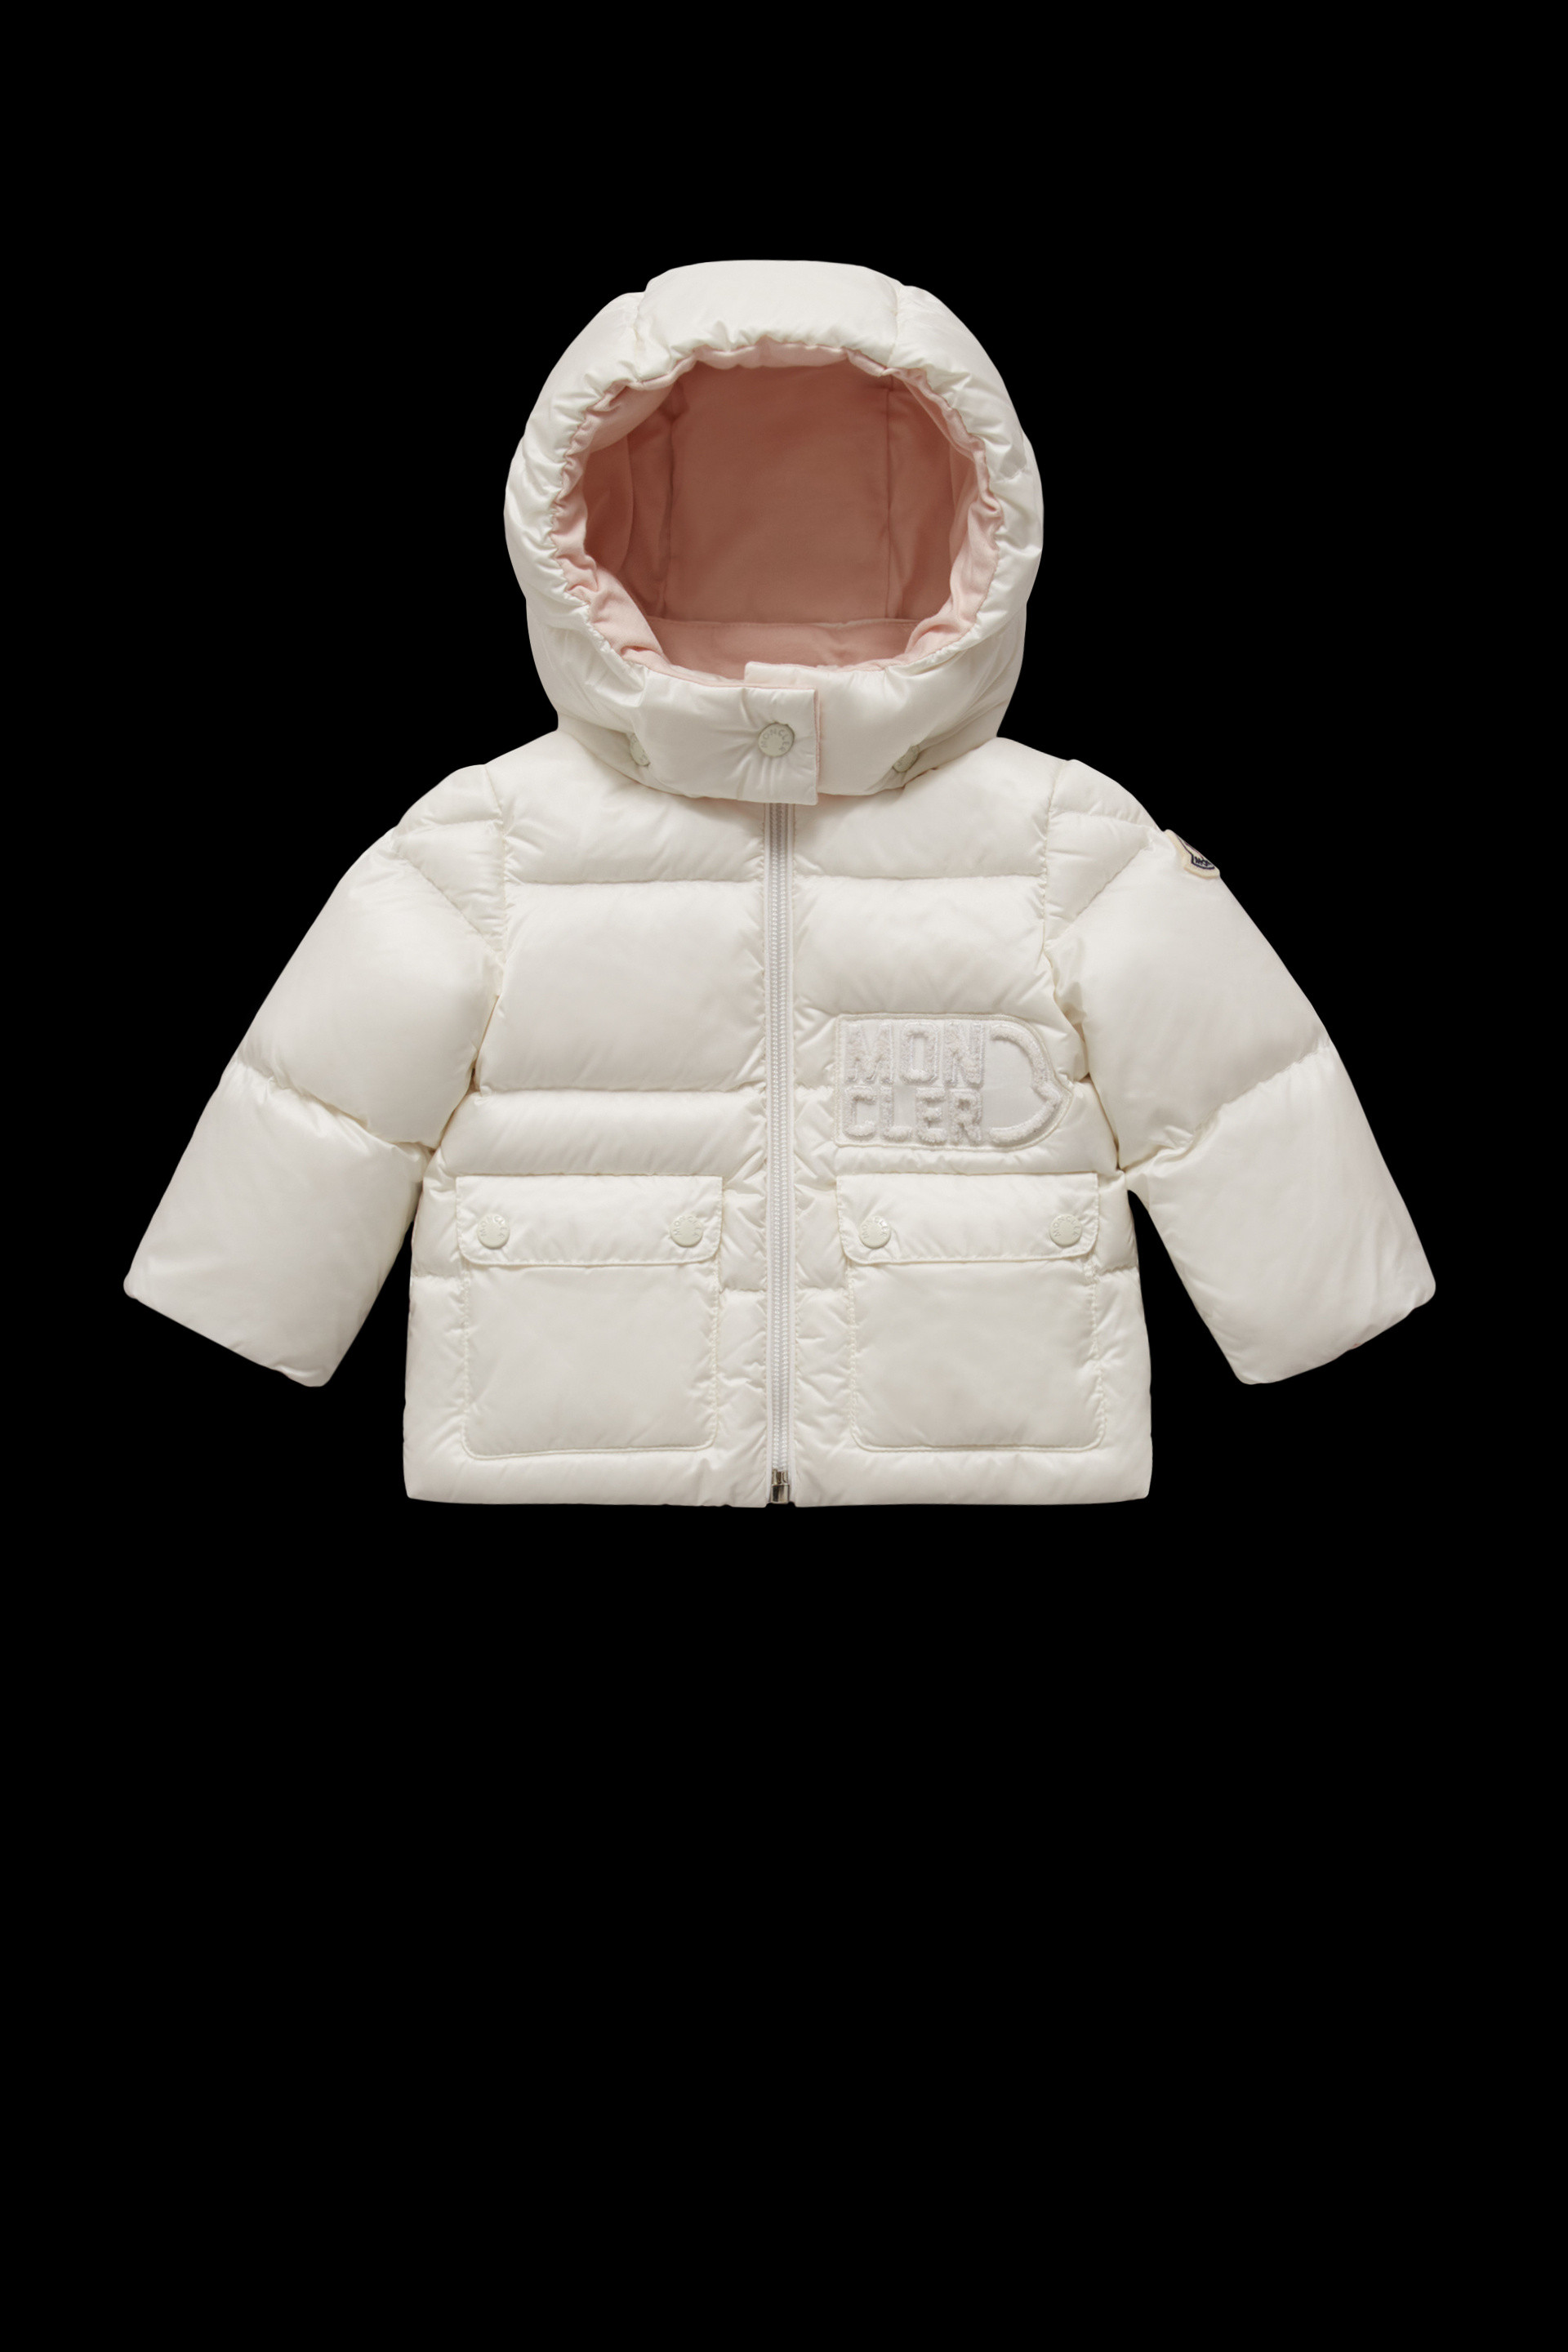 Moncler Infant Jacket Sale Online | website.jkuat.ac.ke